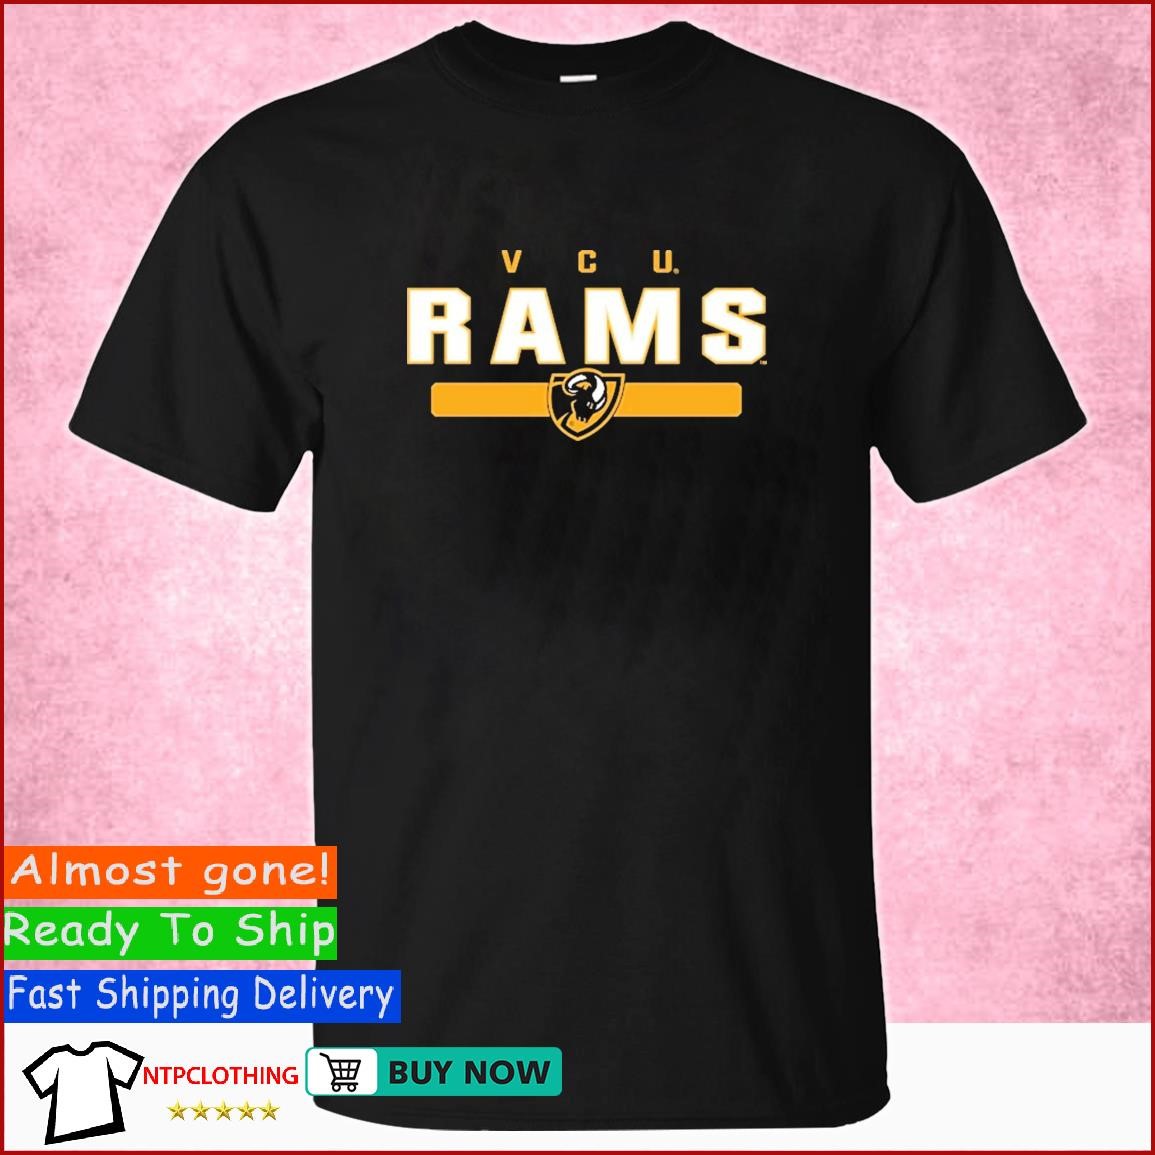 rams women's shirt